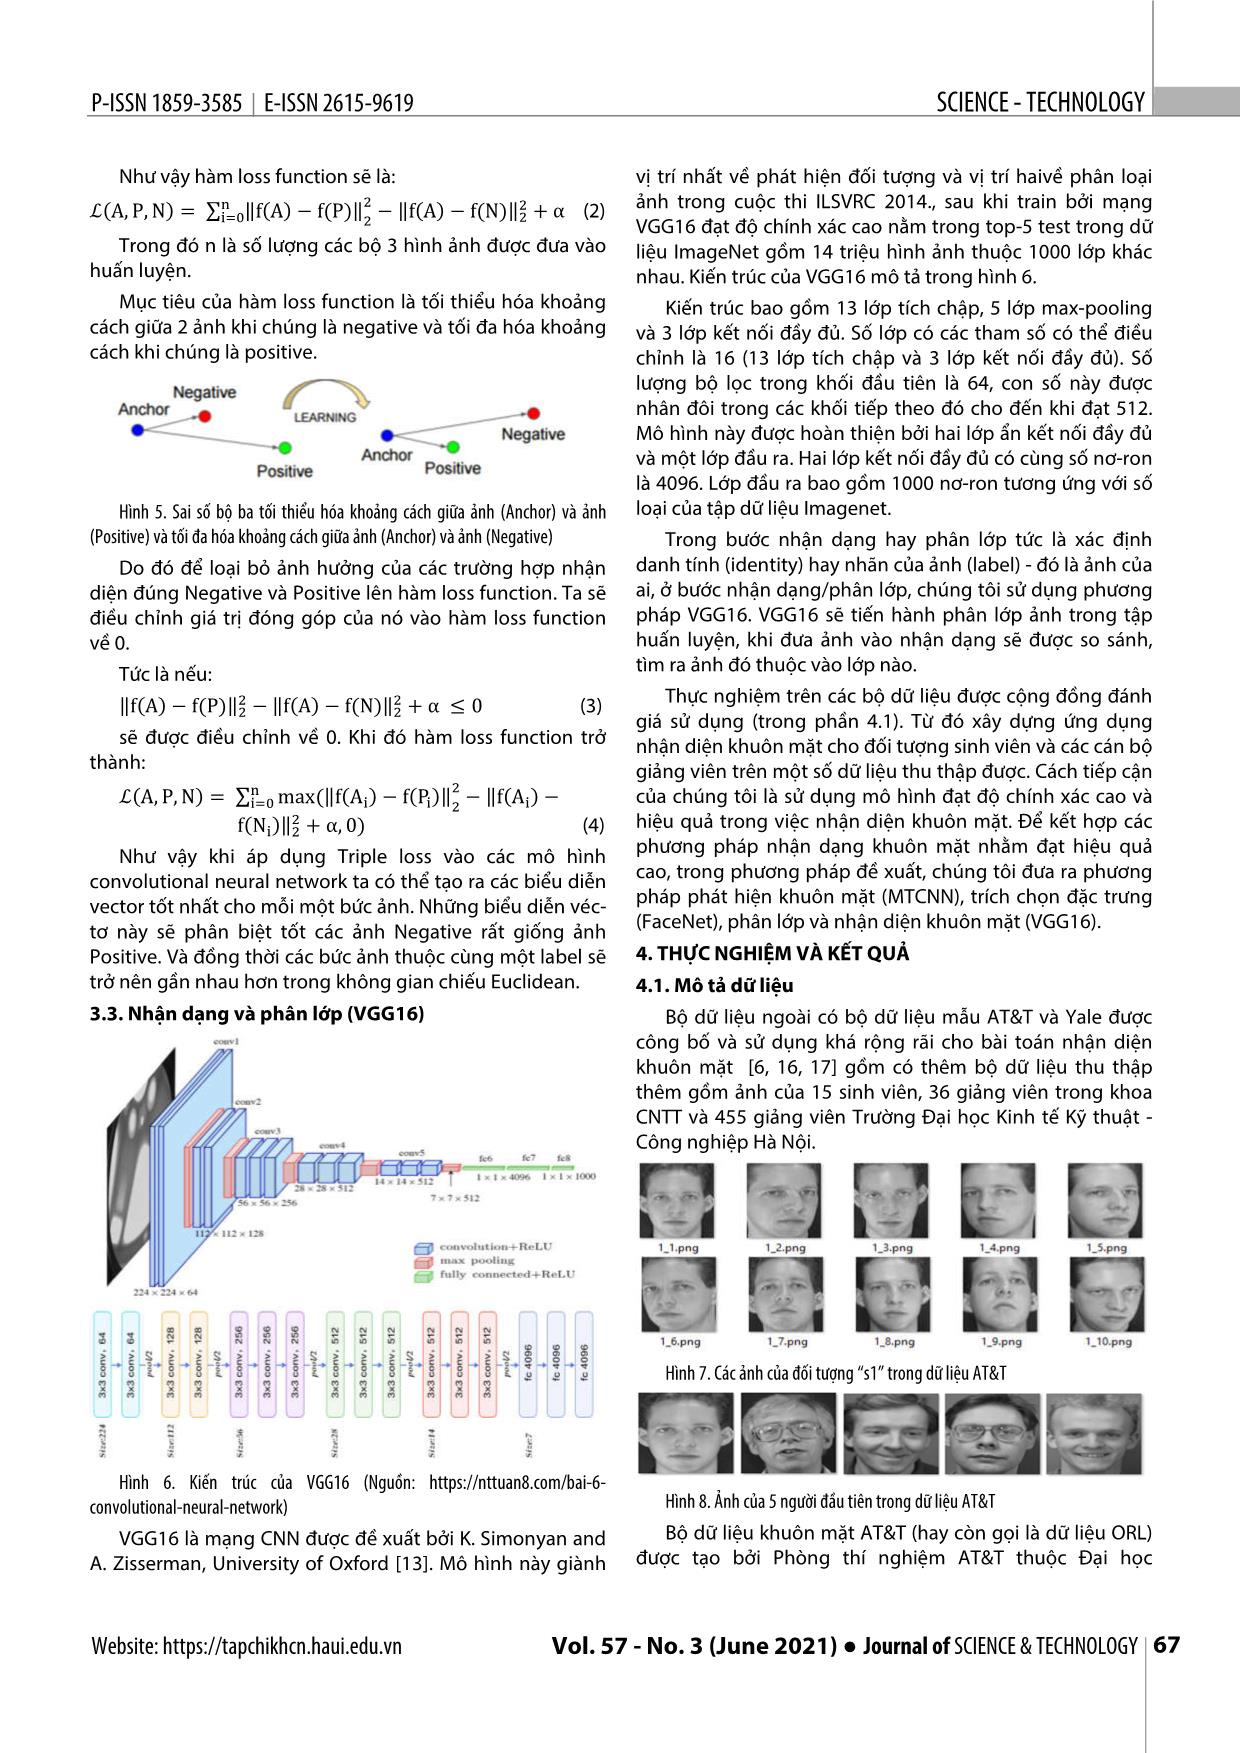 Nhận diện khuôn mặt sử dụng mạng nơron tích chập xếp chồng và mô hình FaceNet trang 4